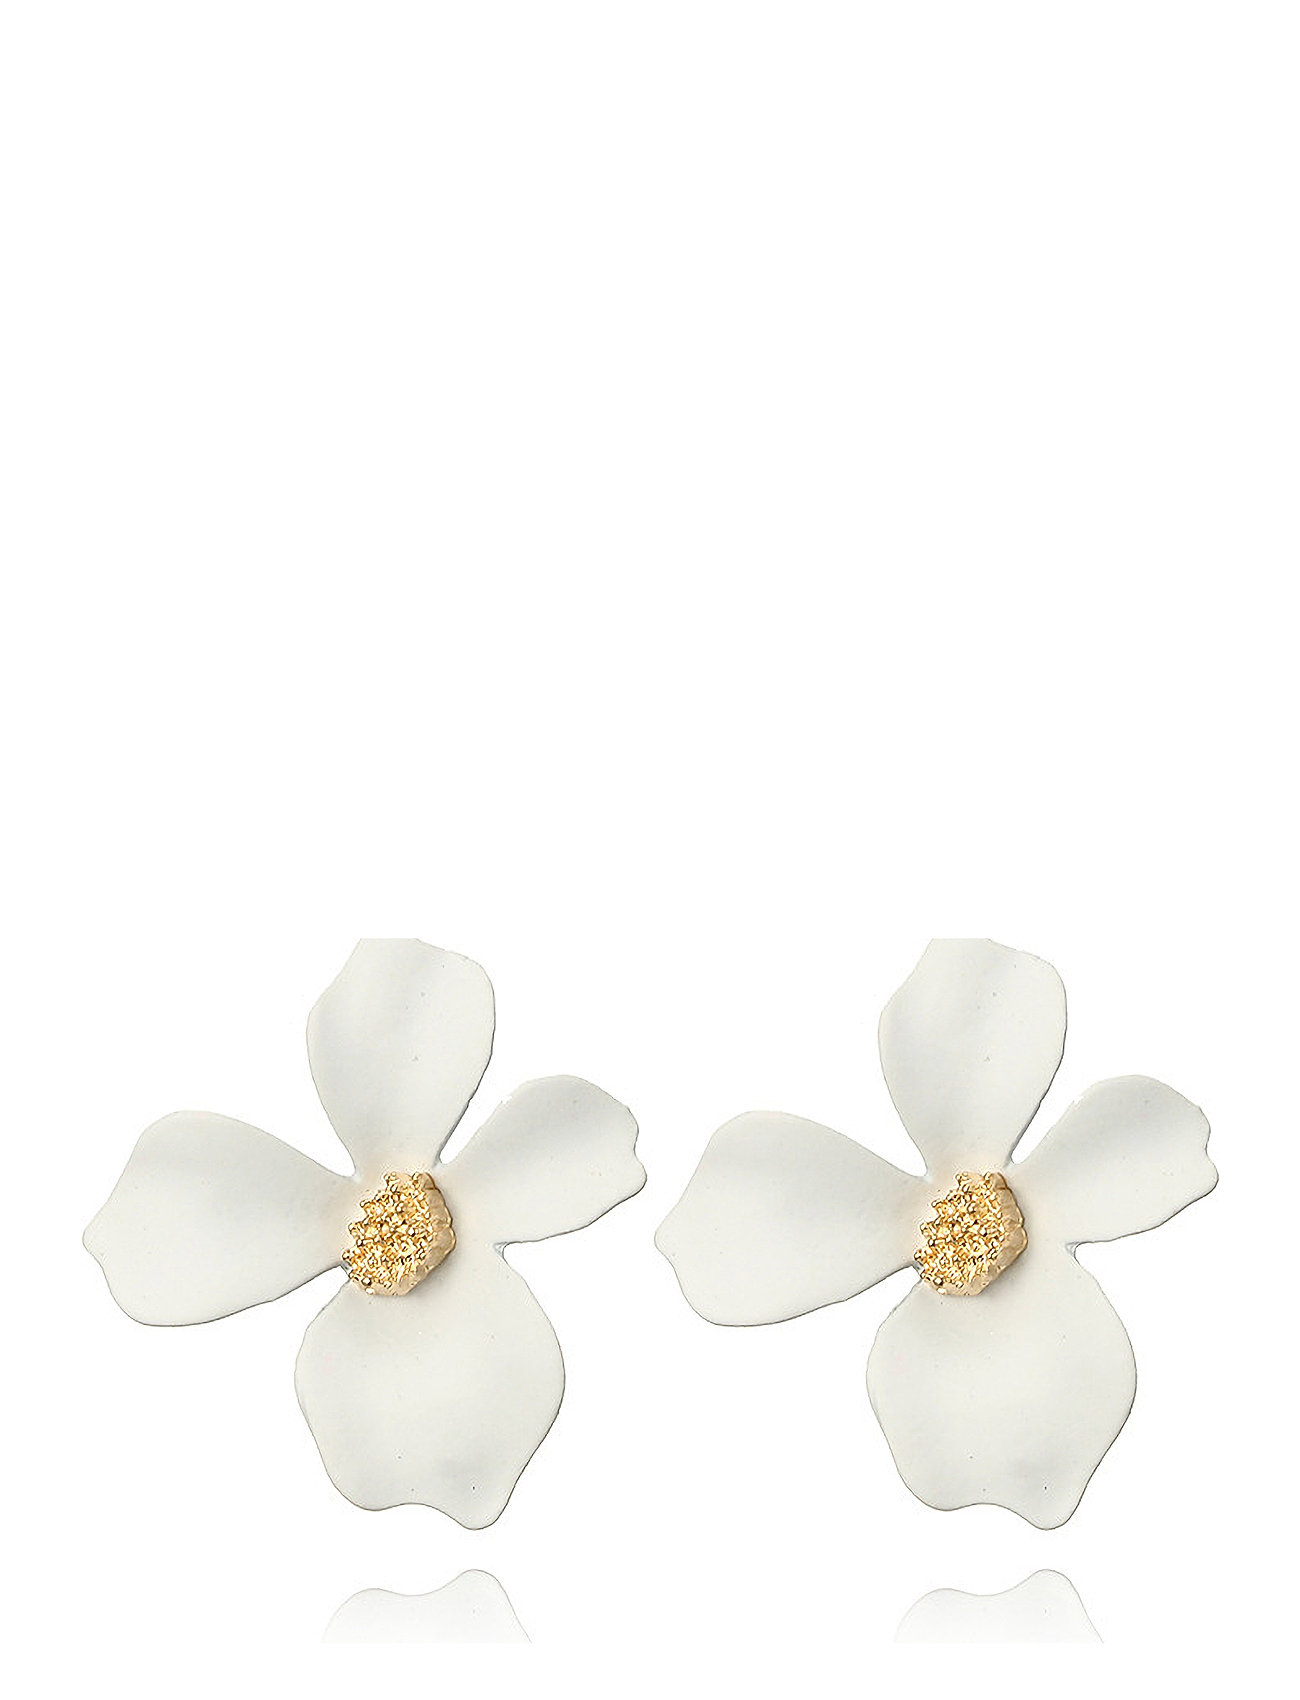 Lilly Flower Earring Accessories Jewellery Earrings Studs White By Jolima